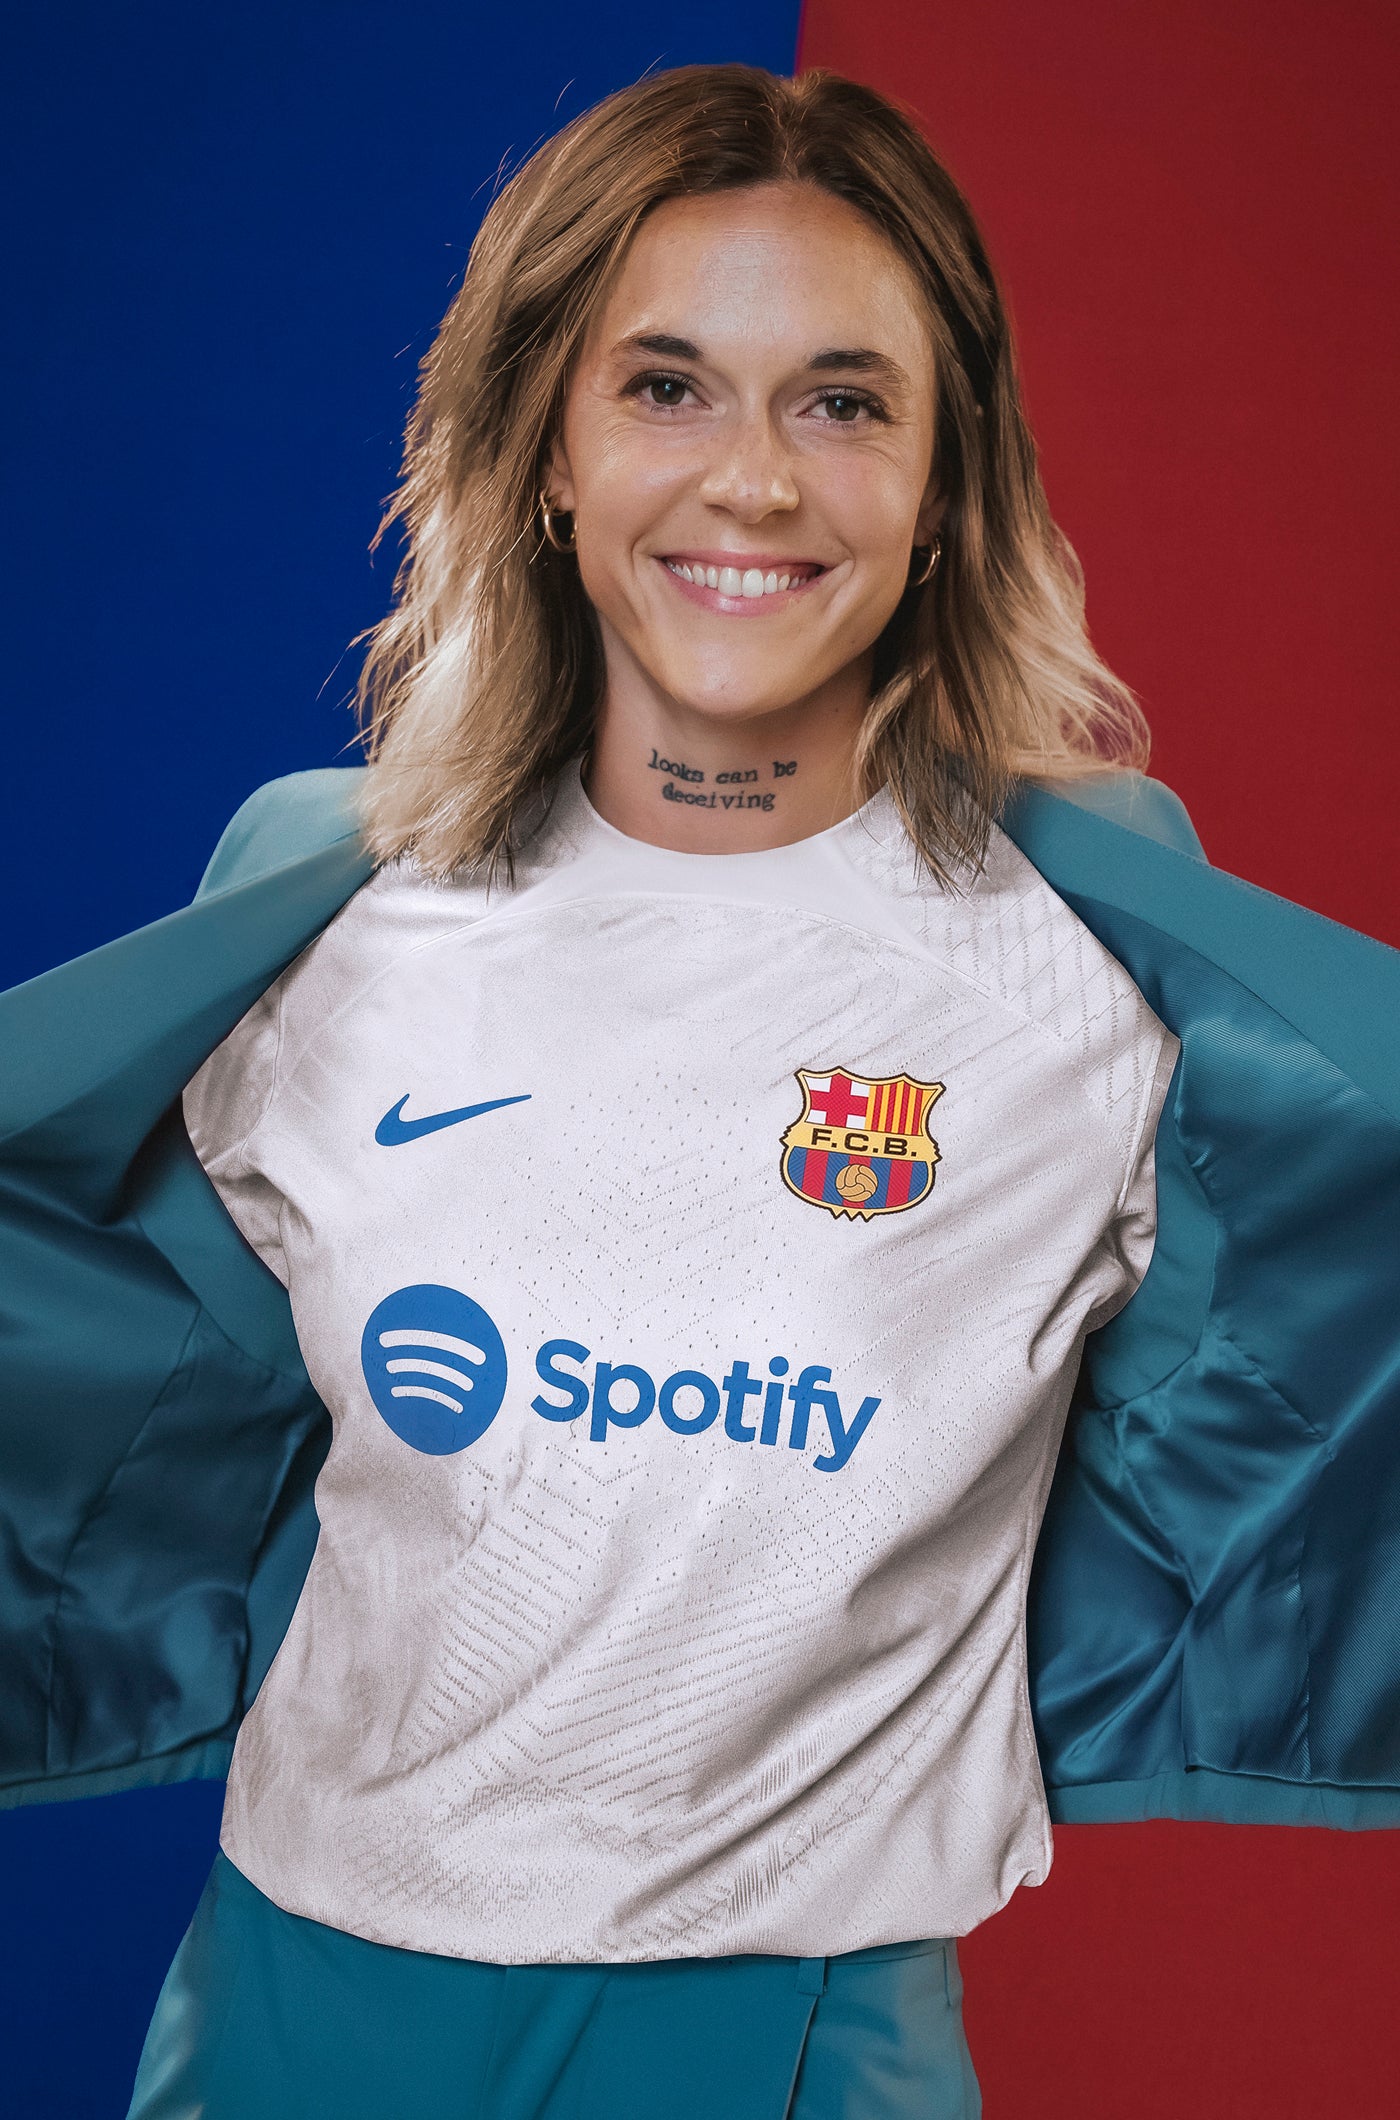 UWCL Camiseta segunda equipación FC Barcelona 23/24 Edición Jugador - Mujer  - MARÍA LEÓN 